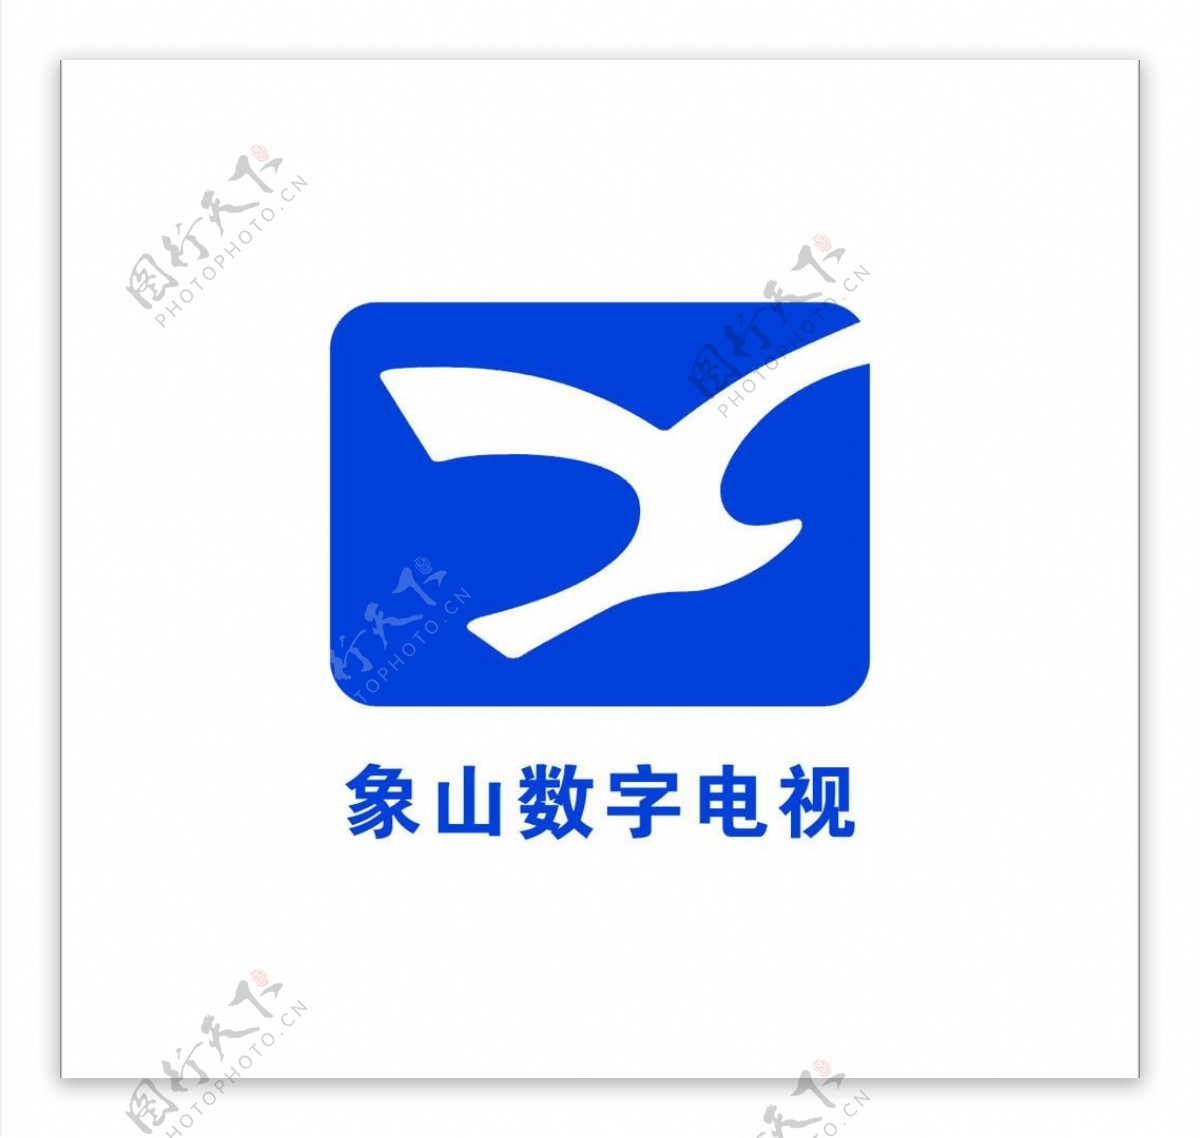 象山数字电视logo图片